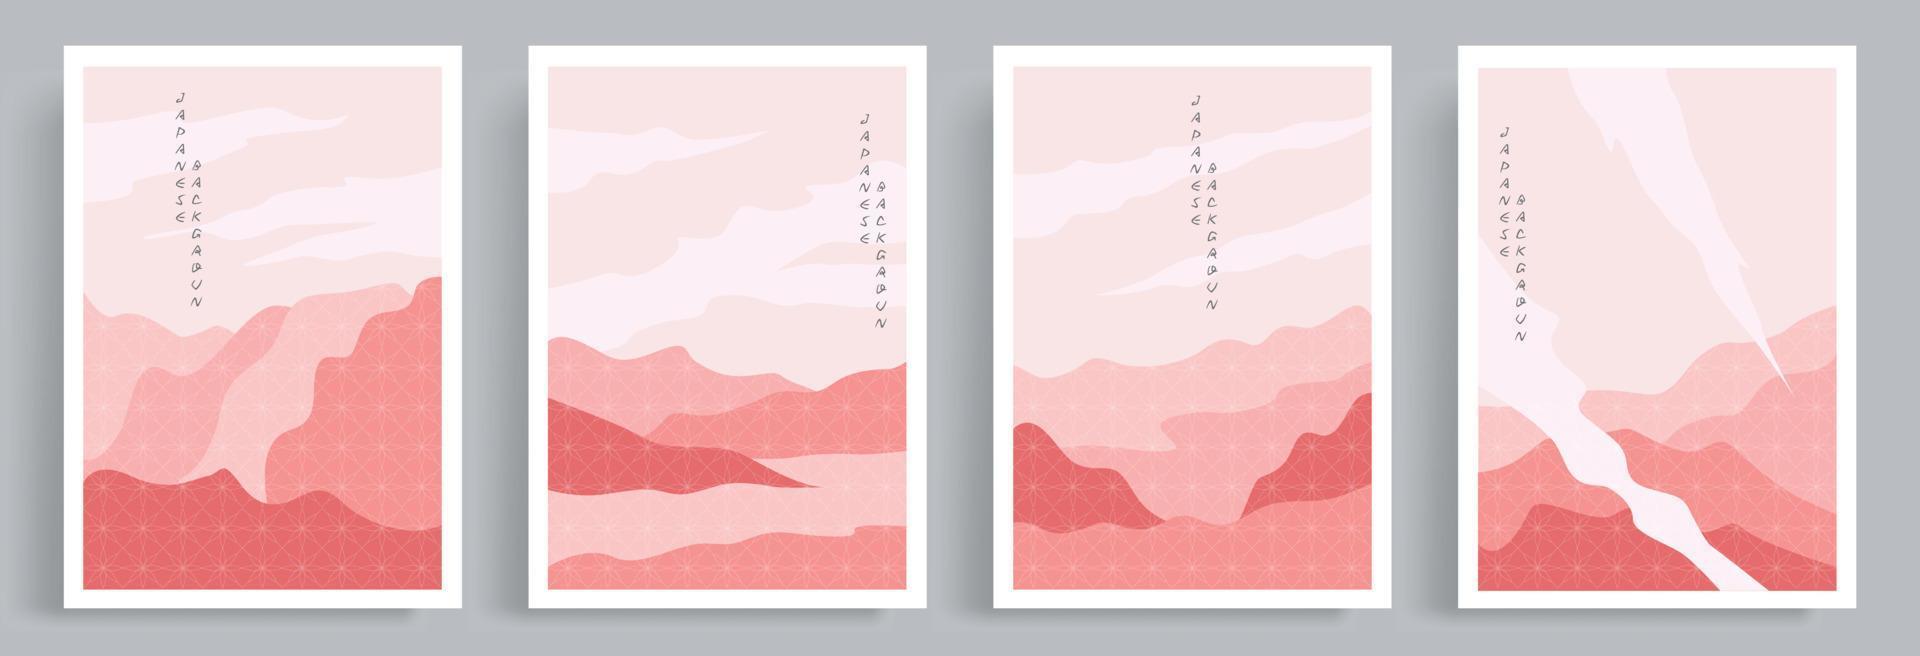 vecteur de décor de mur rose abstrait. arts de style oriental japonais avec motif. convient aux impressions, dépliants, impressions sur toile, affiches, décorations murales, couvertures, médias sociaux et papiers peints.